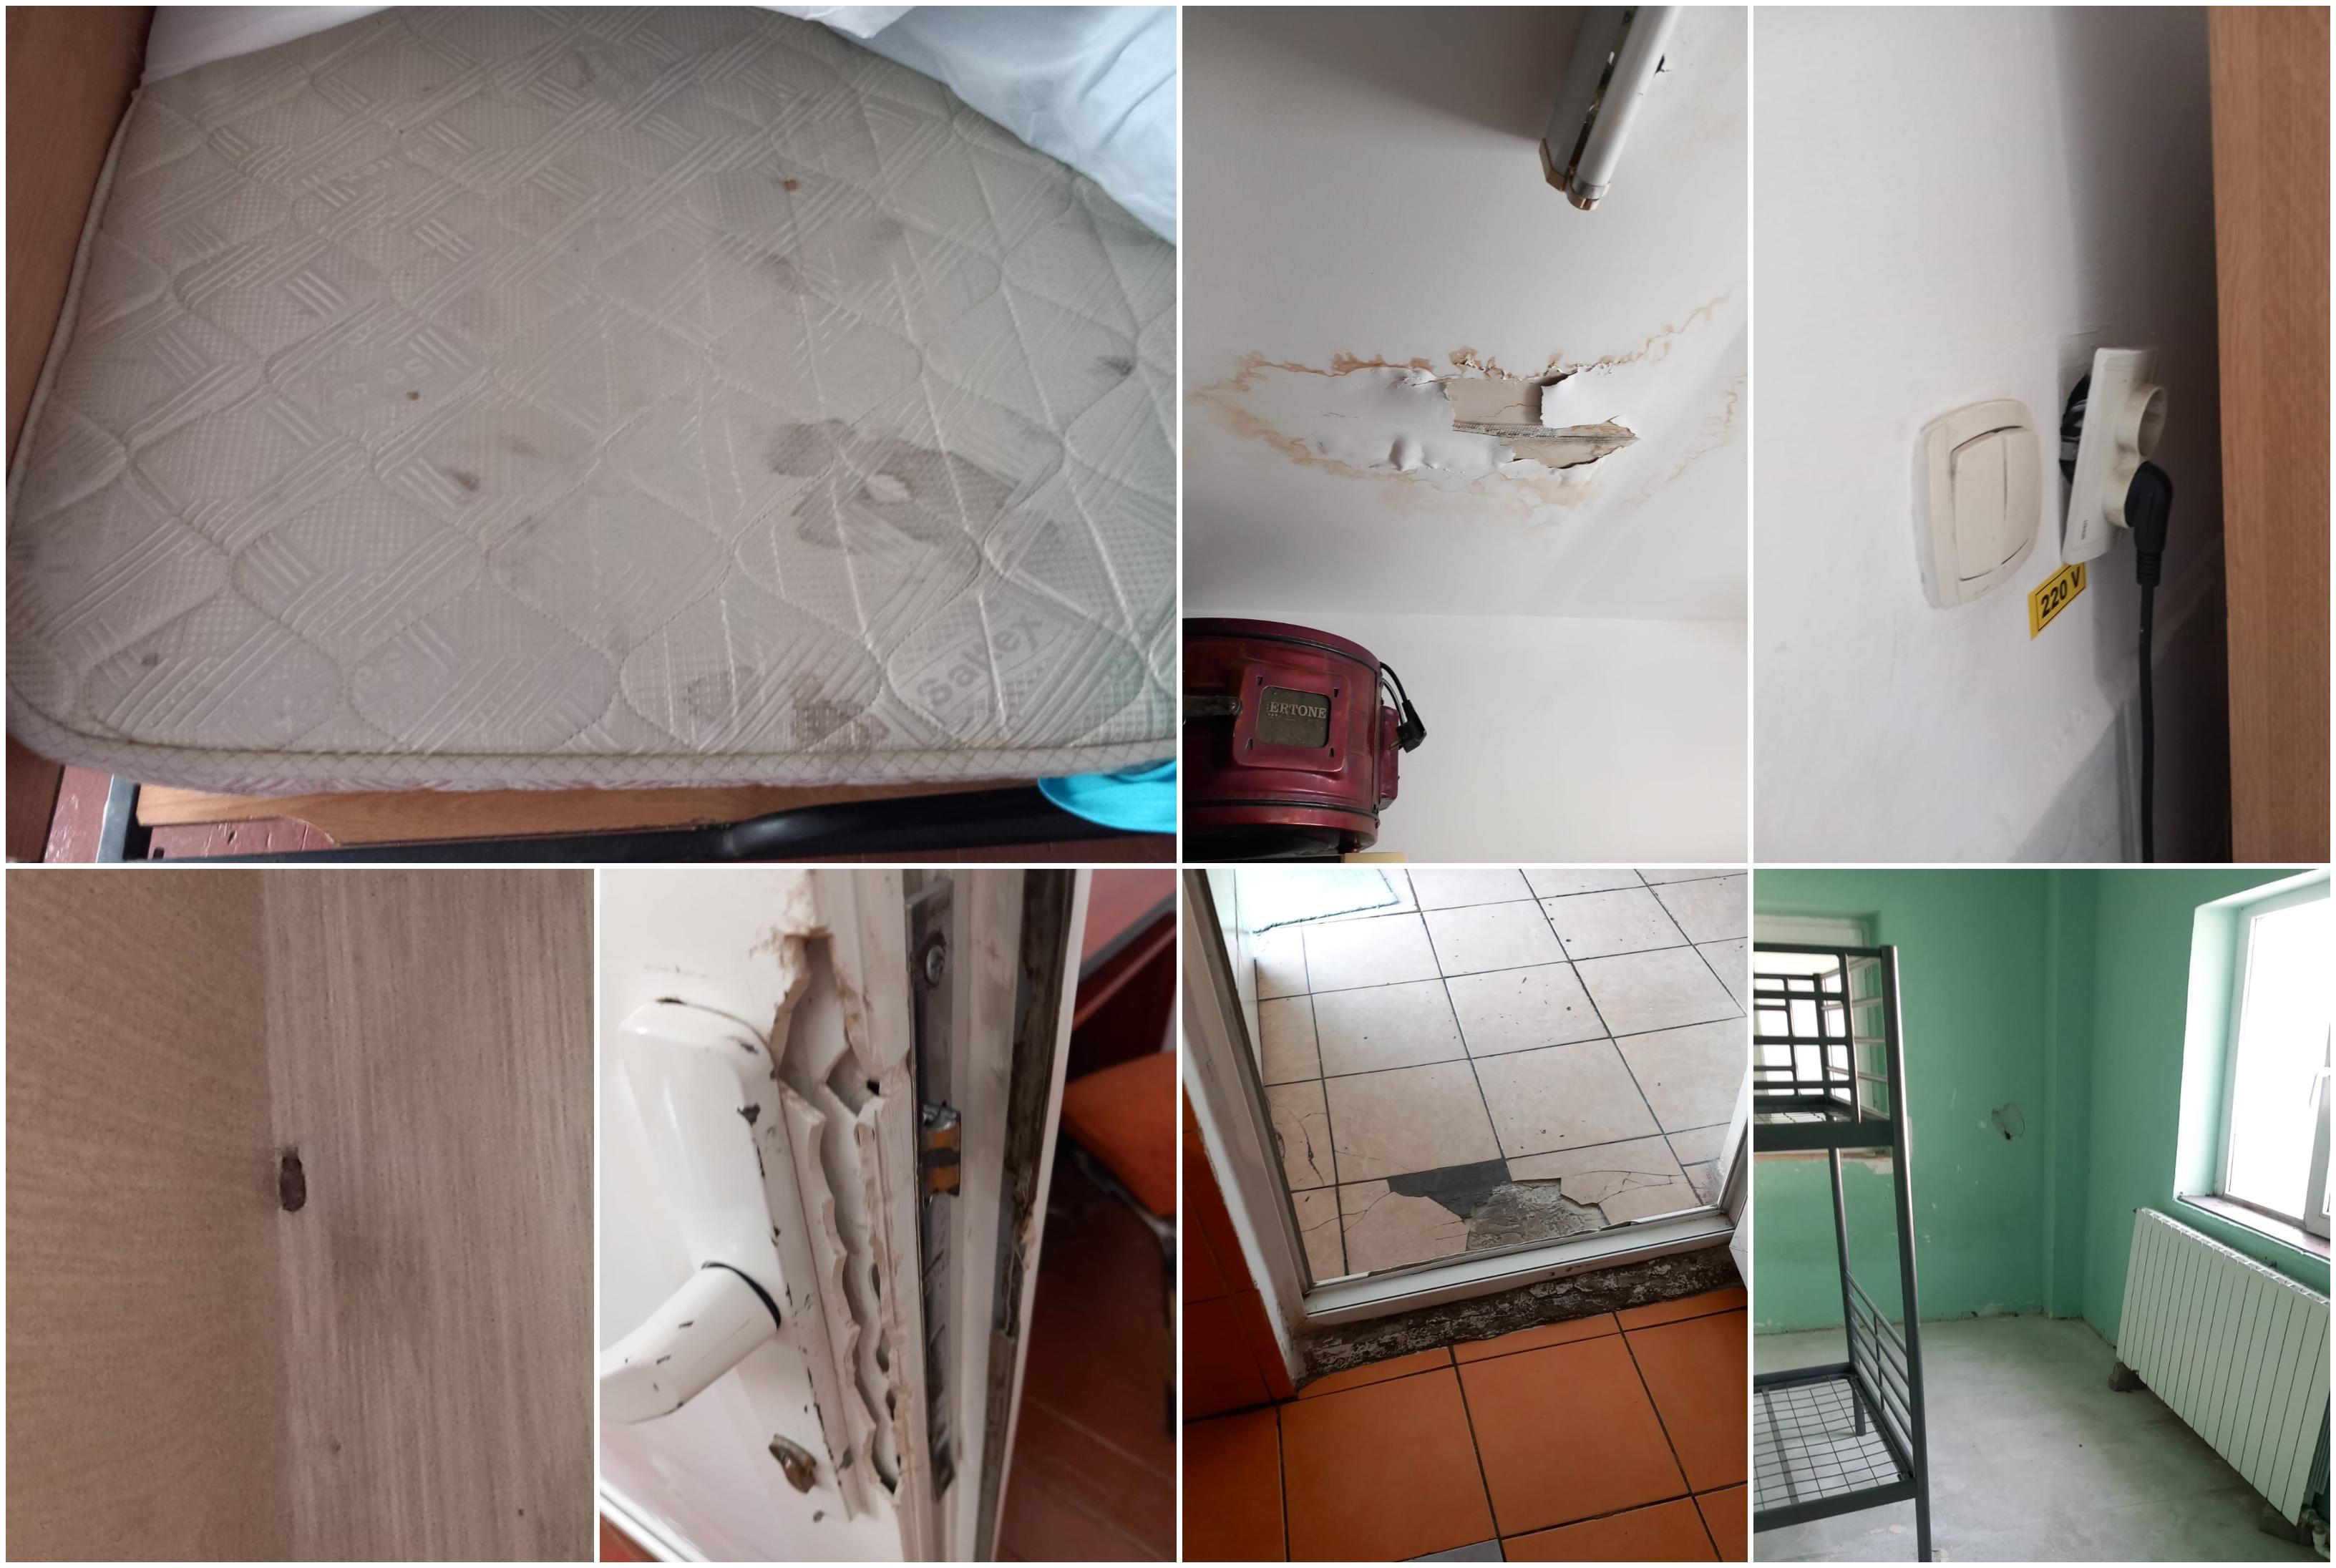 Condiţiile infecte din centrele de copii din Giurgiu: saltele murdare, gândaci, igrasie, rugină şi mâncare depozitată neconform